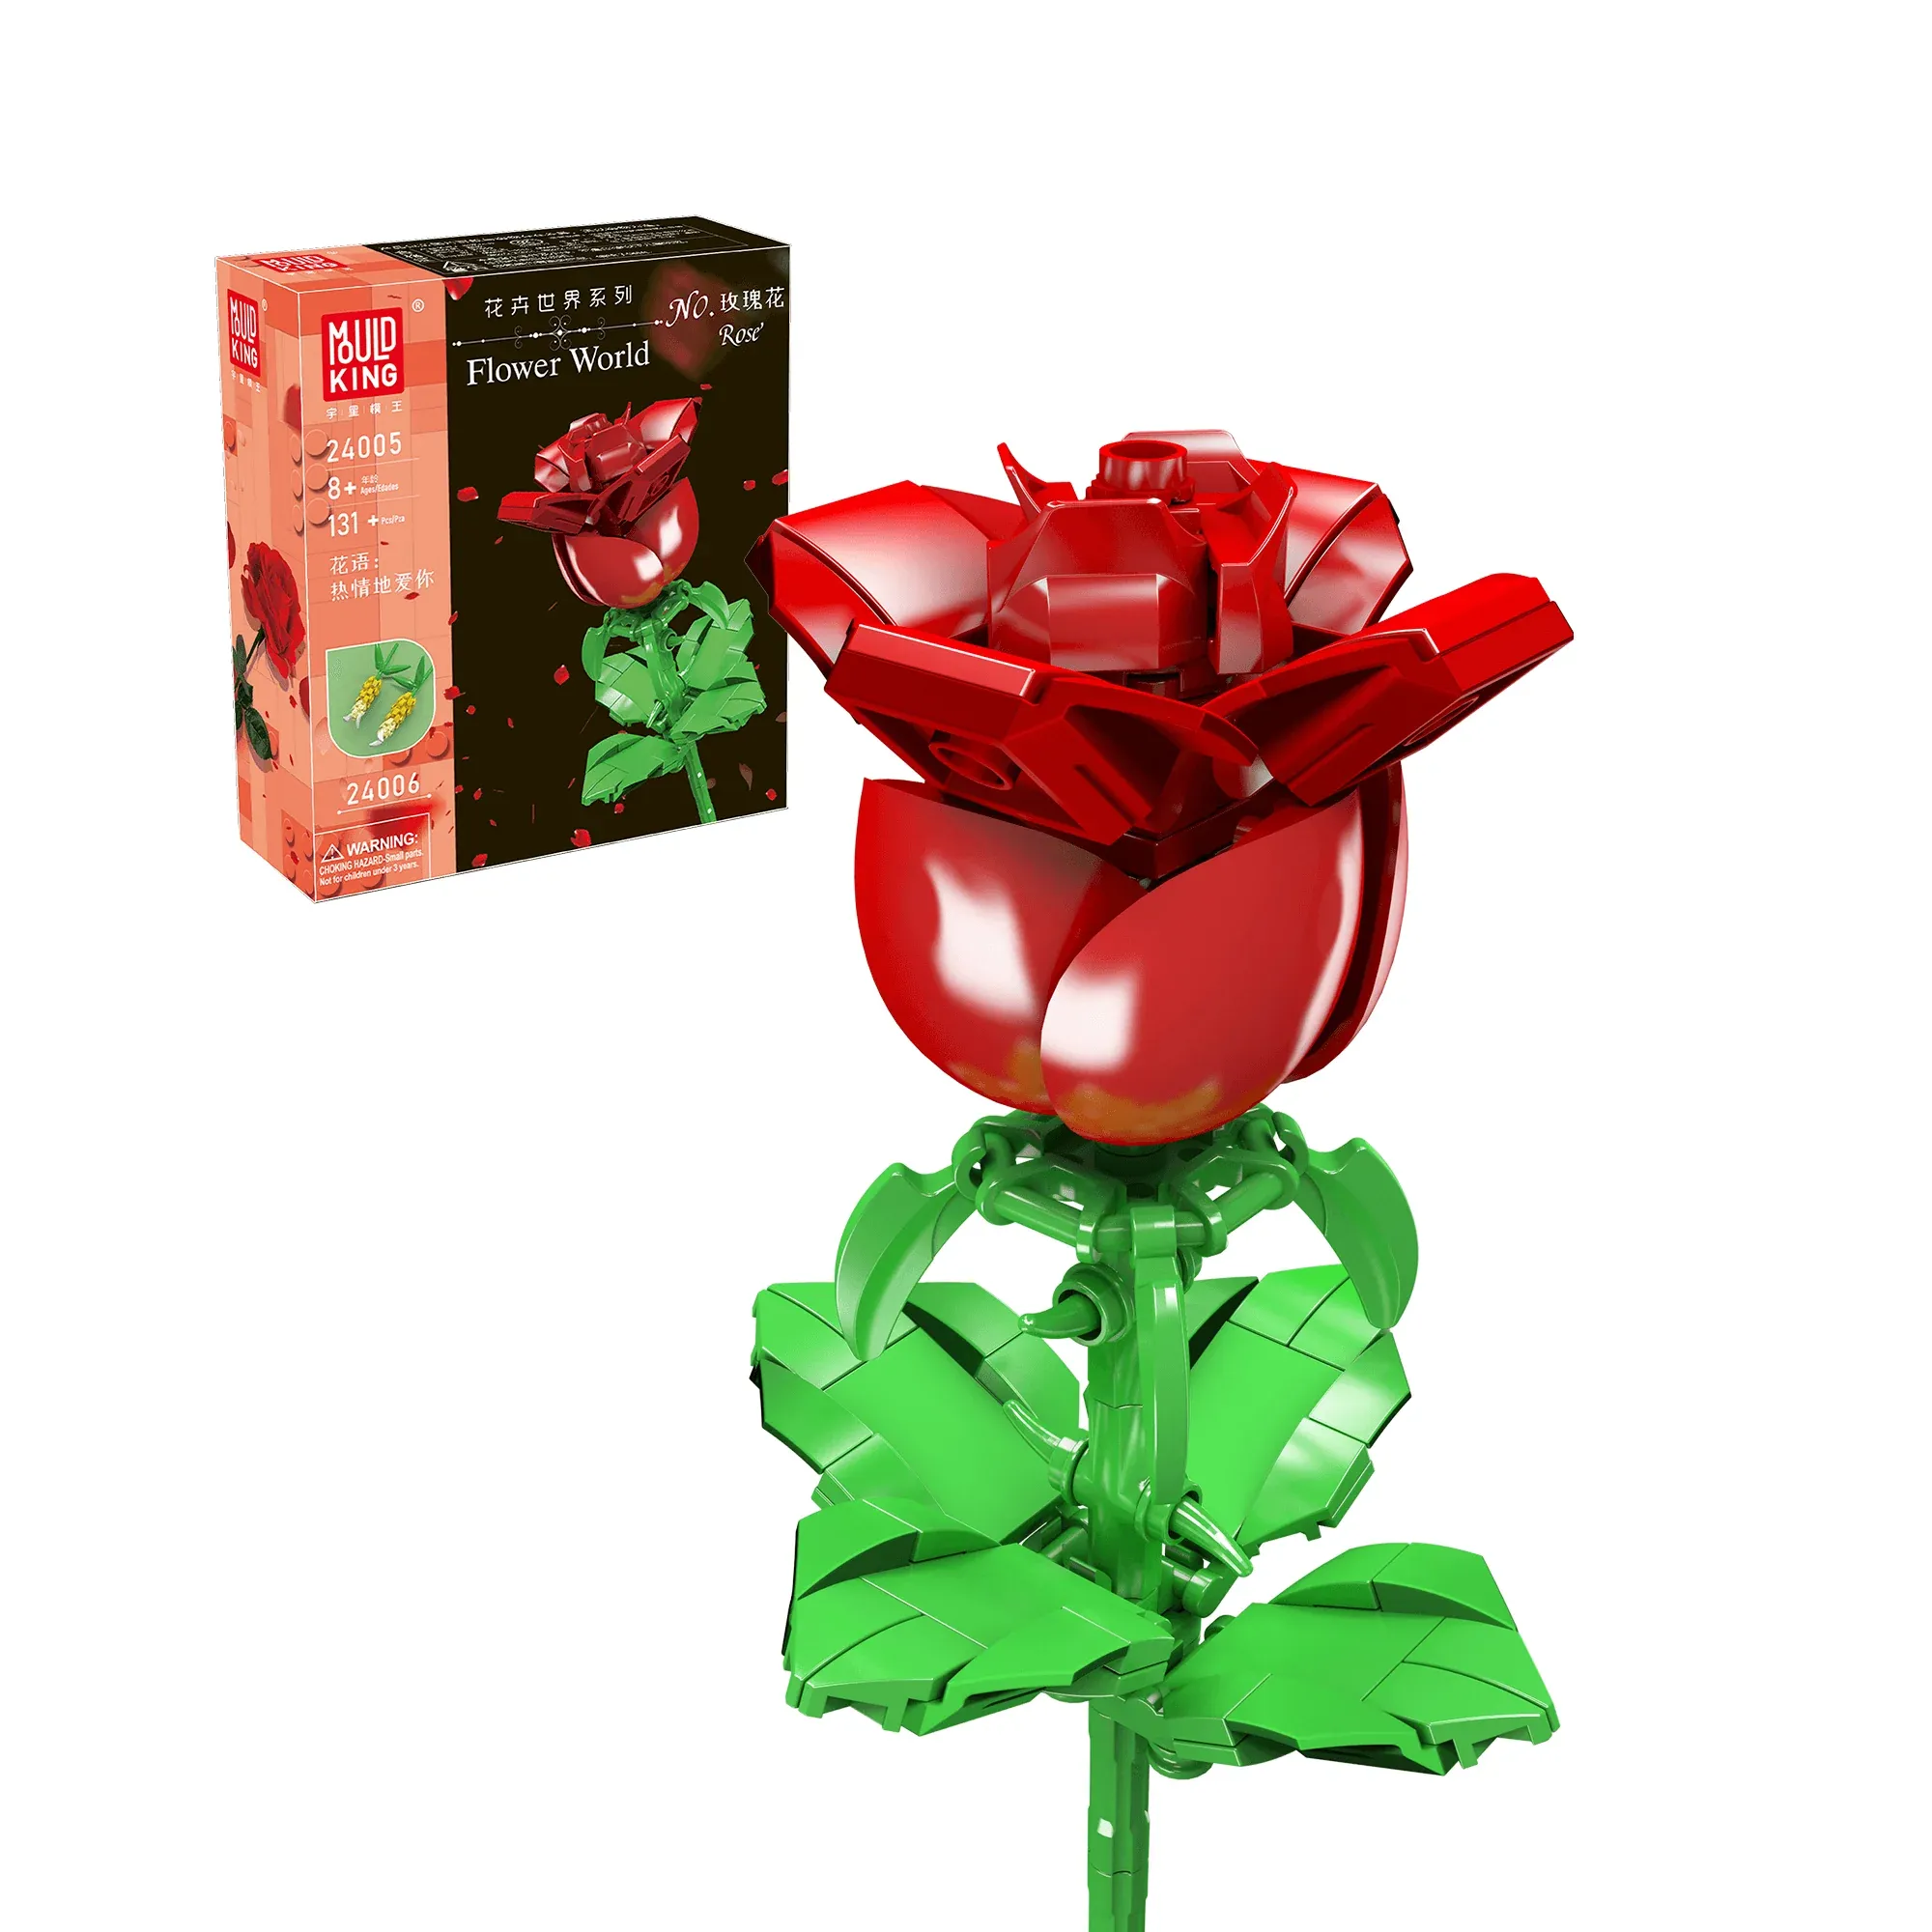 LEGO Icons Bouquet of Roses • Set 10328 • SetDB